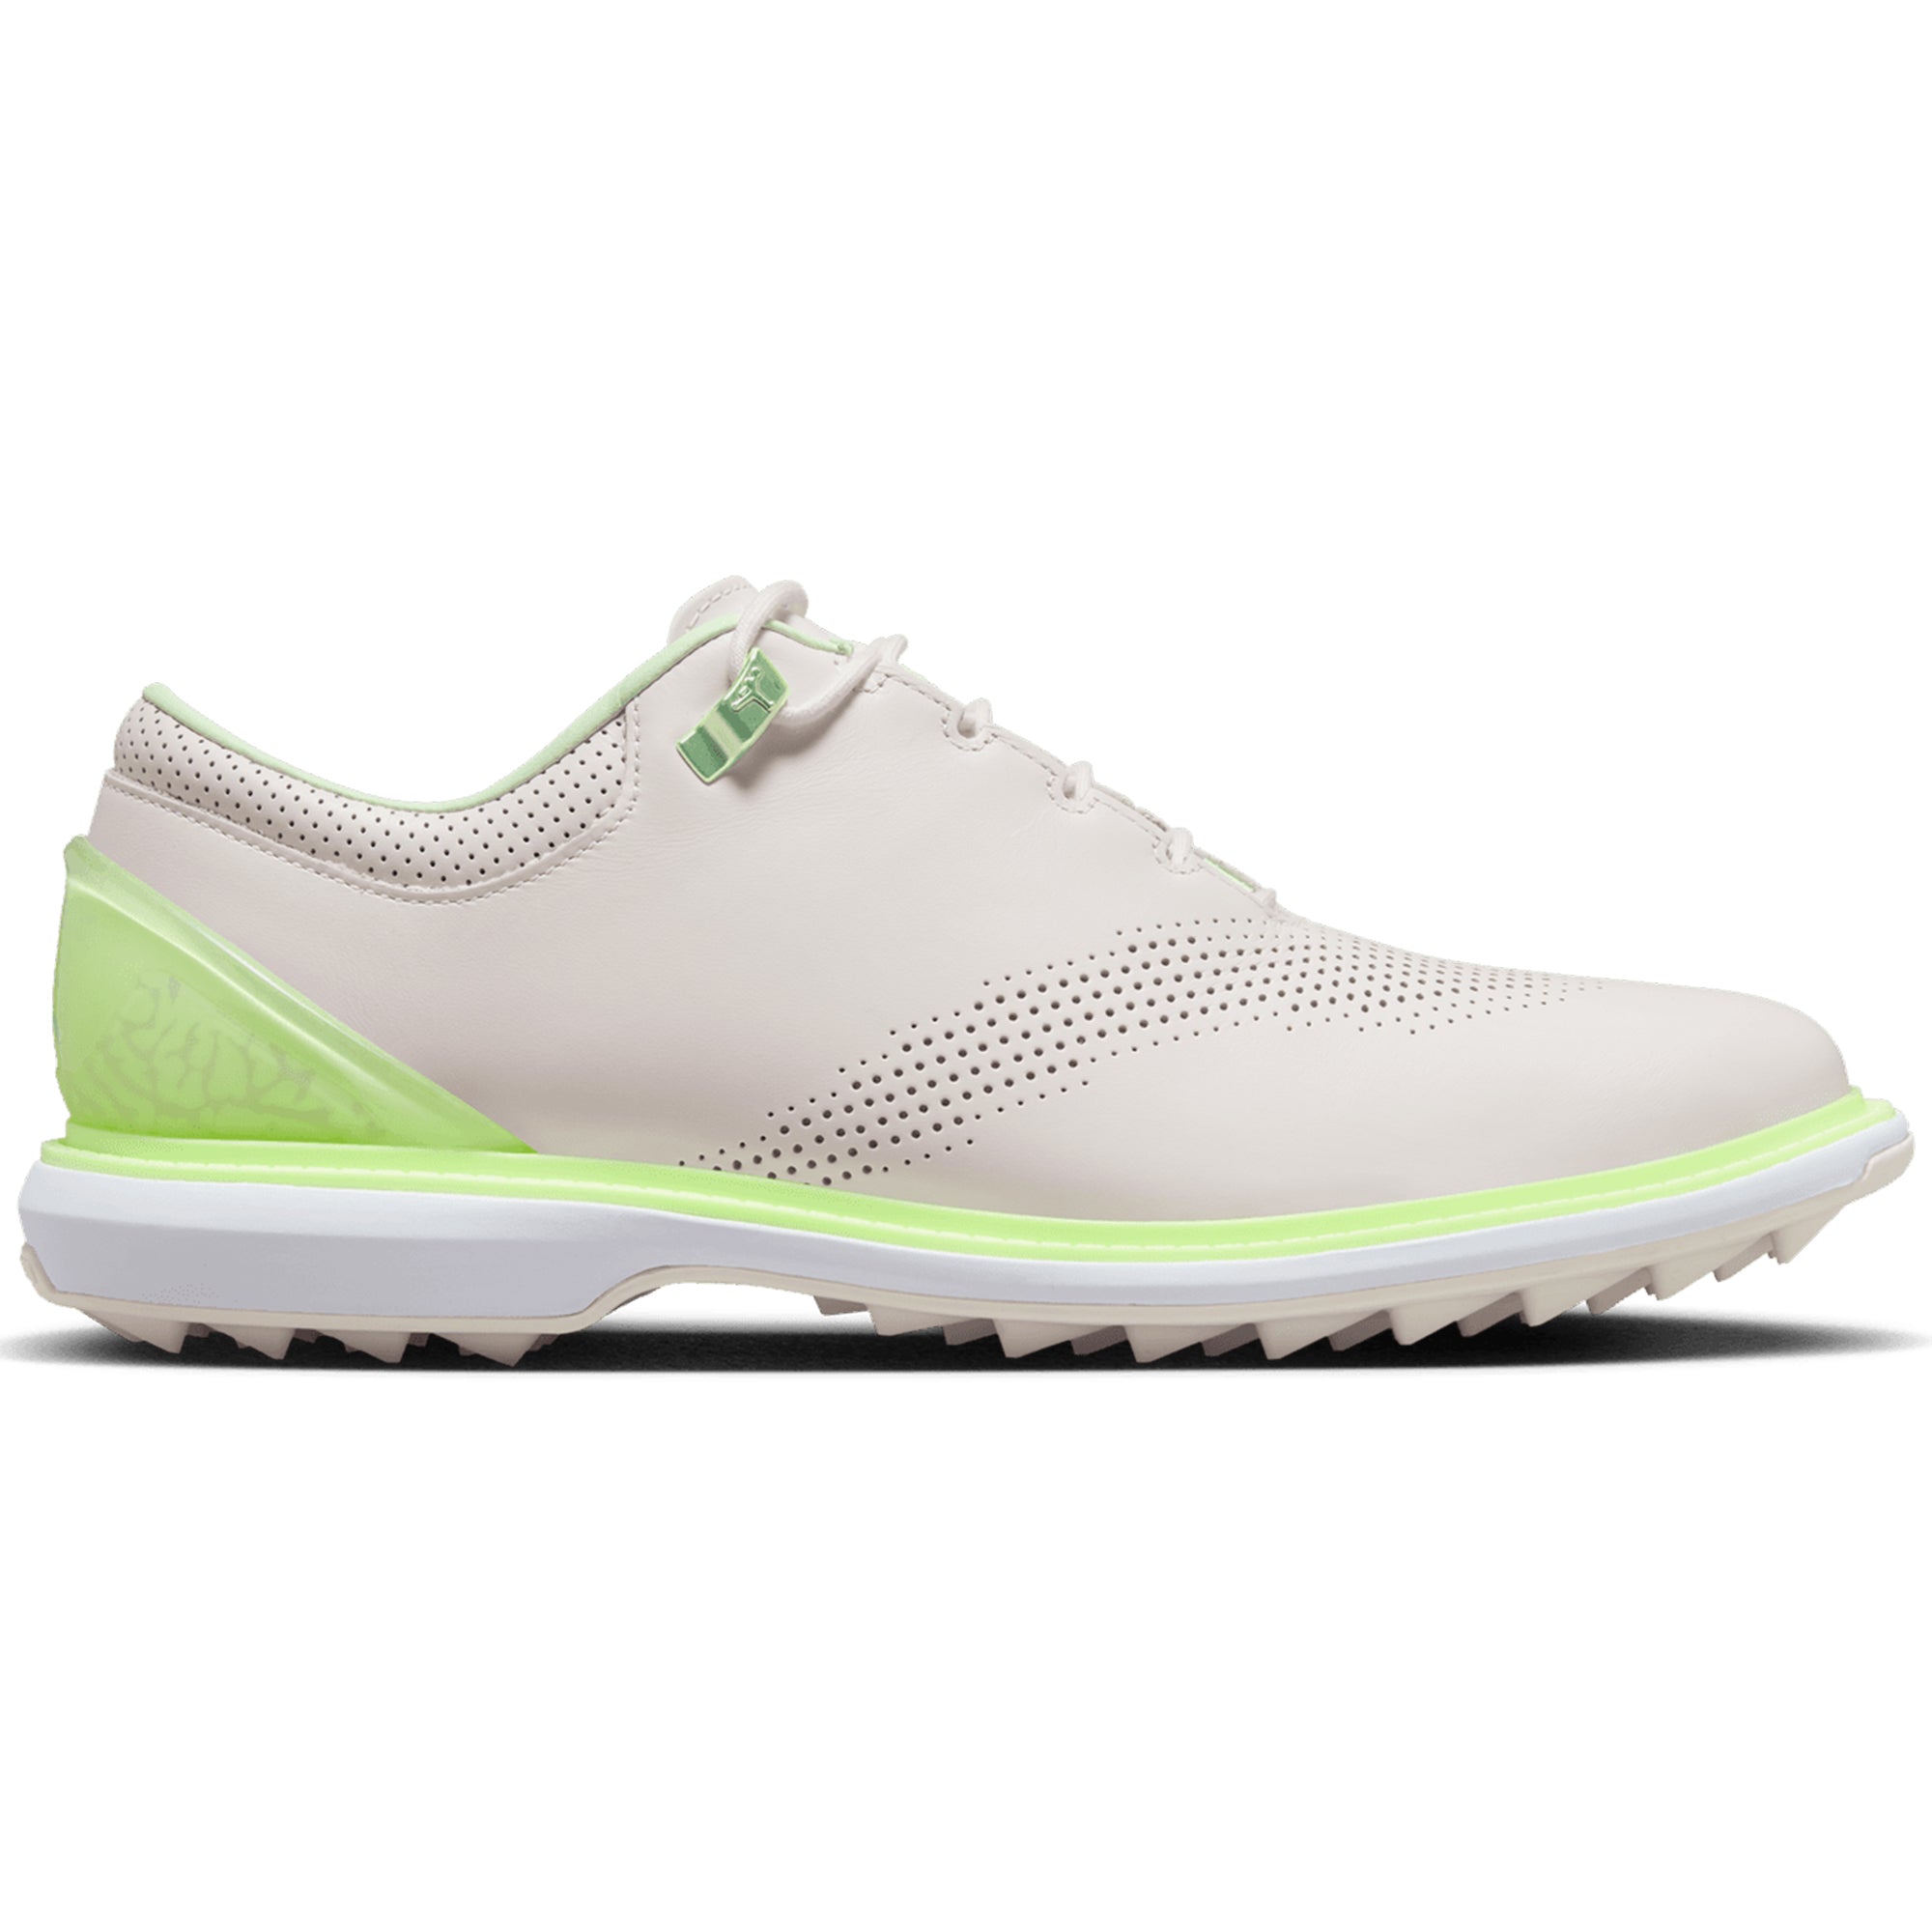 Nike Golf Air Jordan ADG 4 Shoes DM0103 Phantom Barley Volt White 003 ...